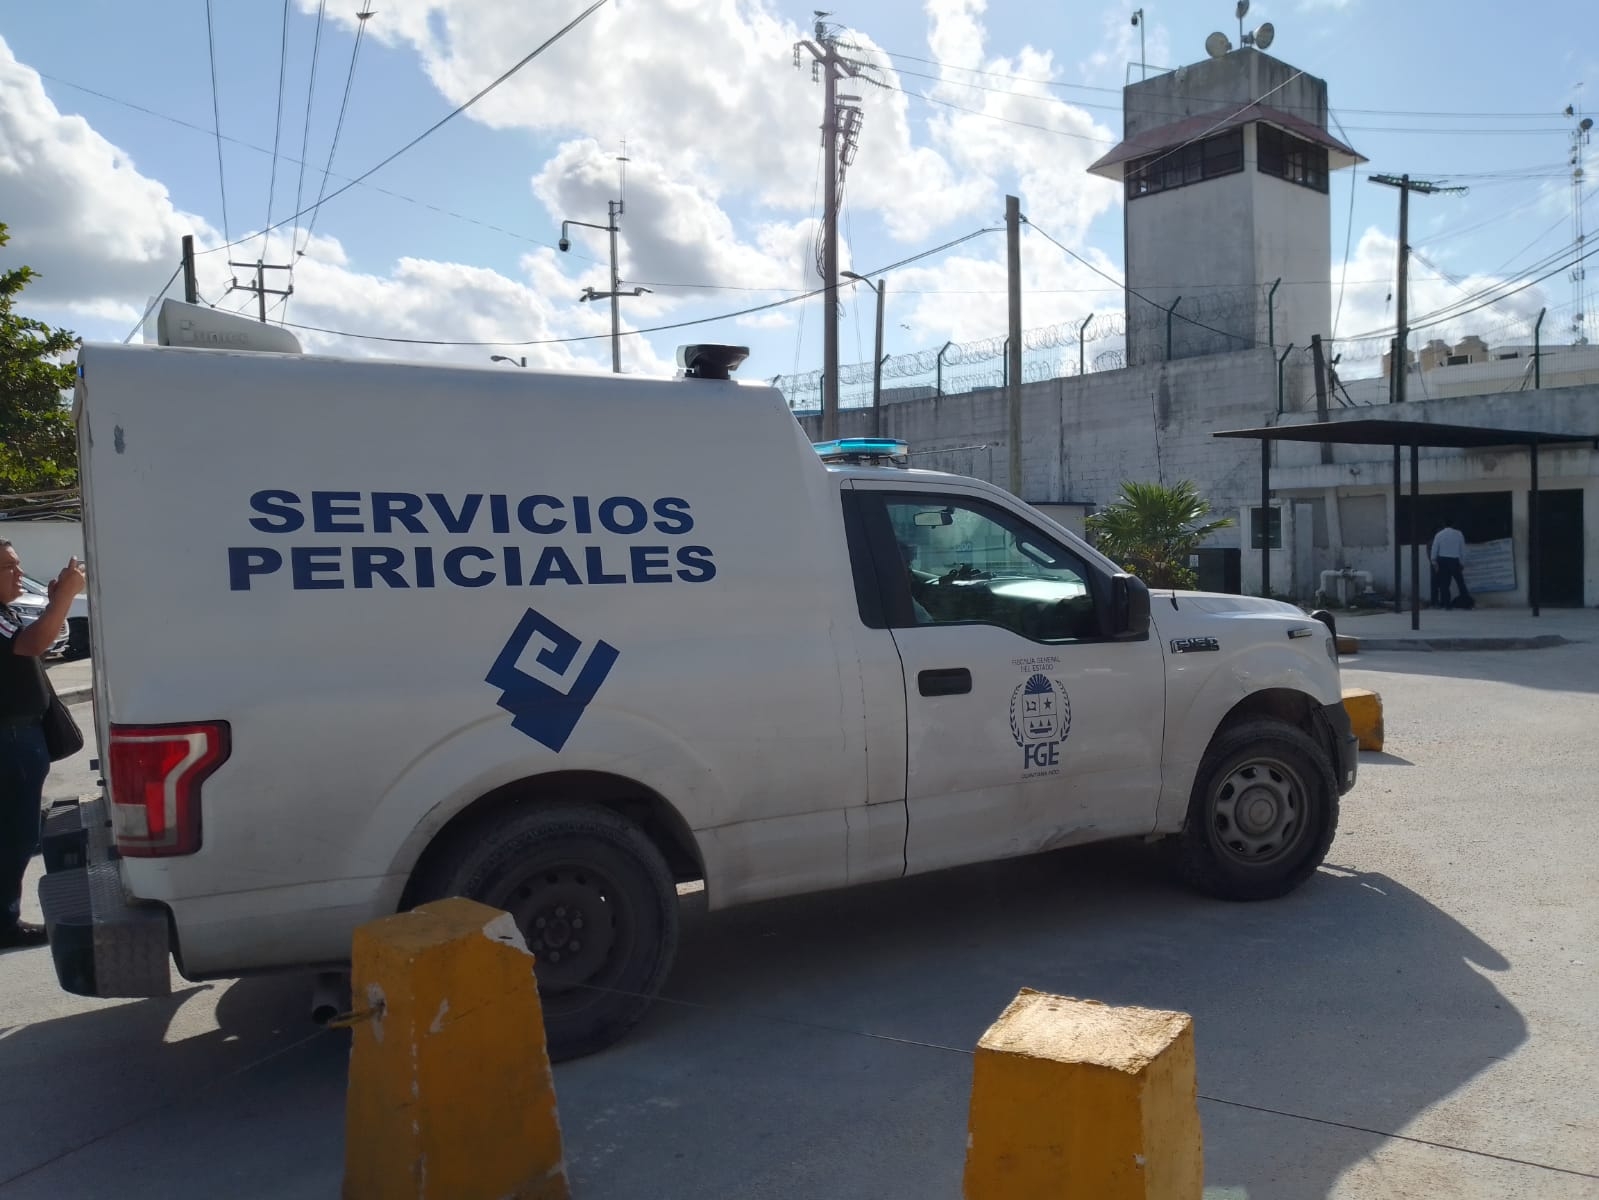 Reportan una persona sin vida en el área conyugal del Cereso de Cancún: EN VIVO